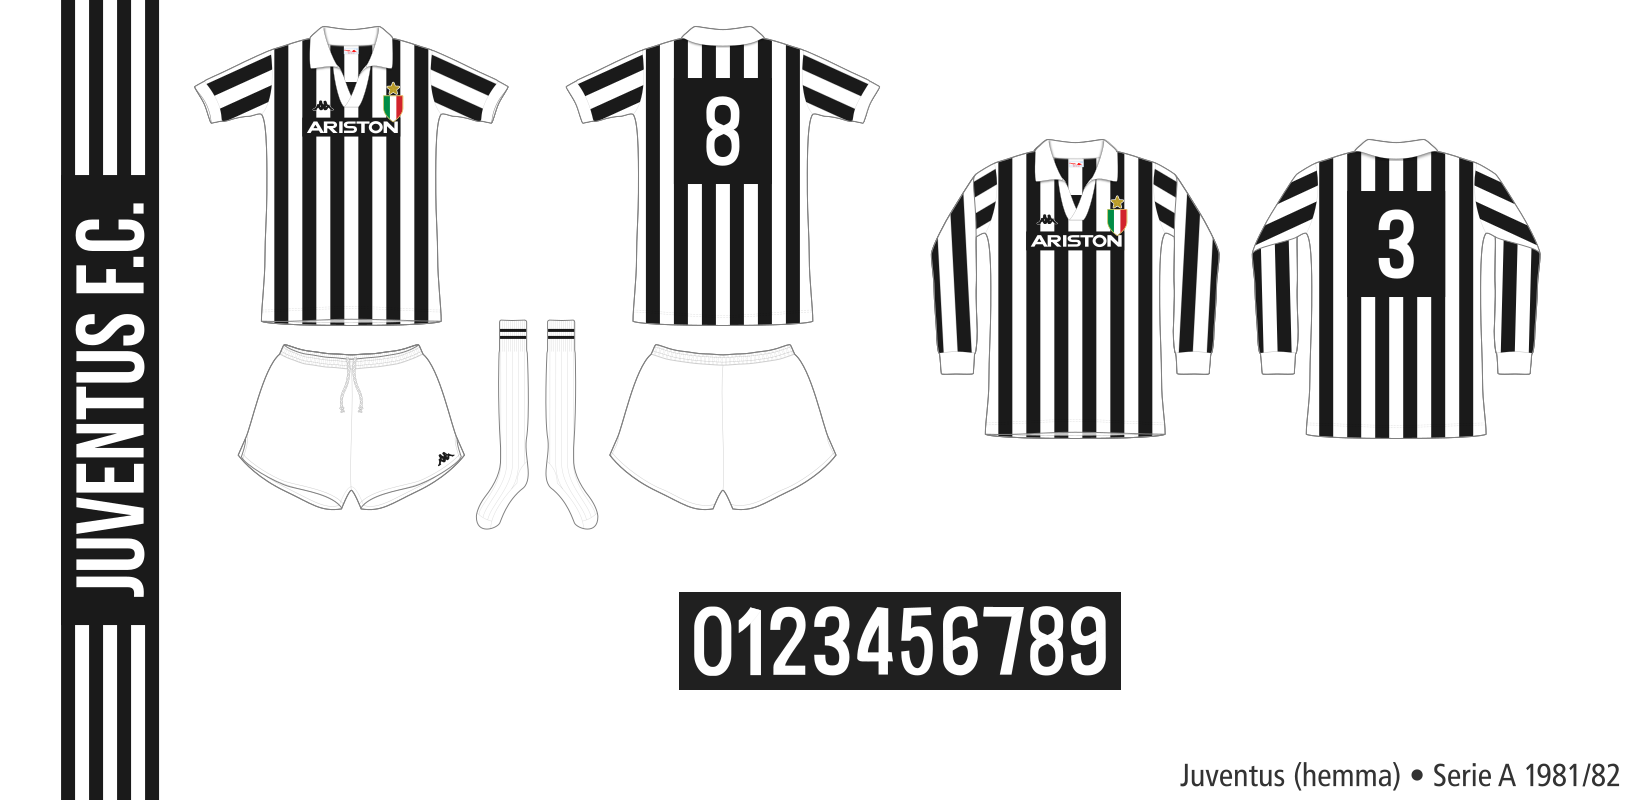 Juventus 1981/82 (hemma)